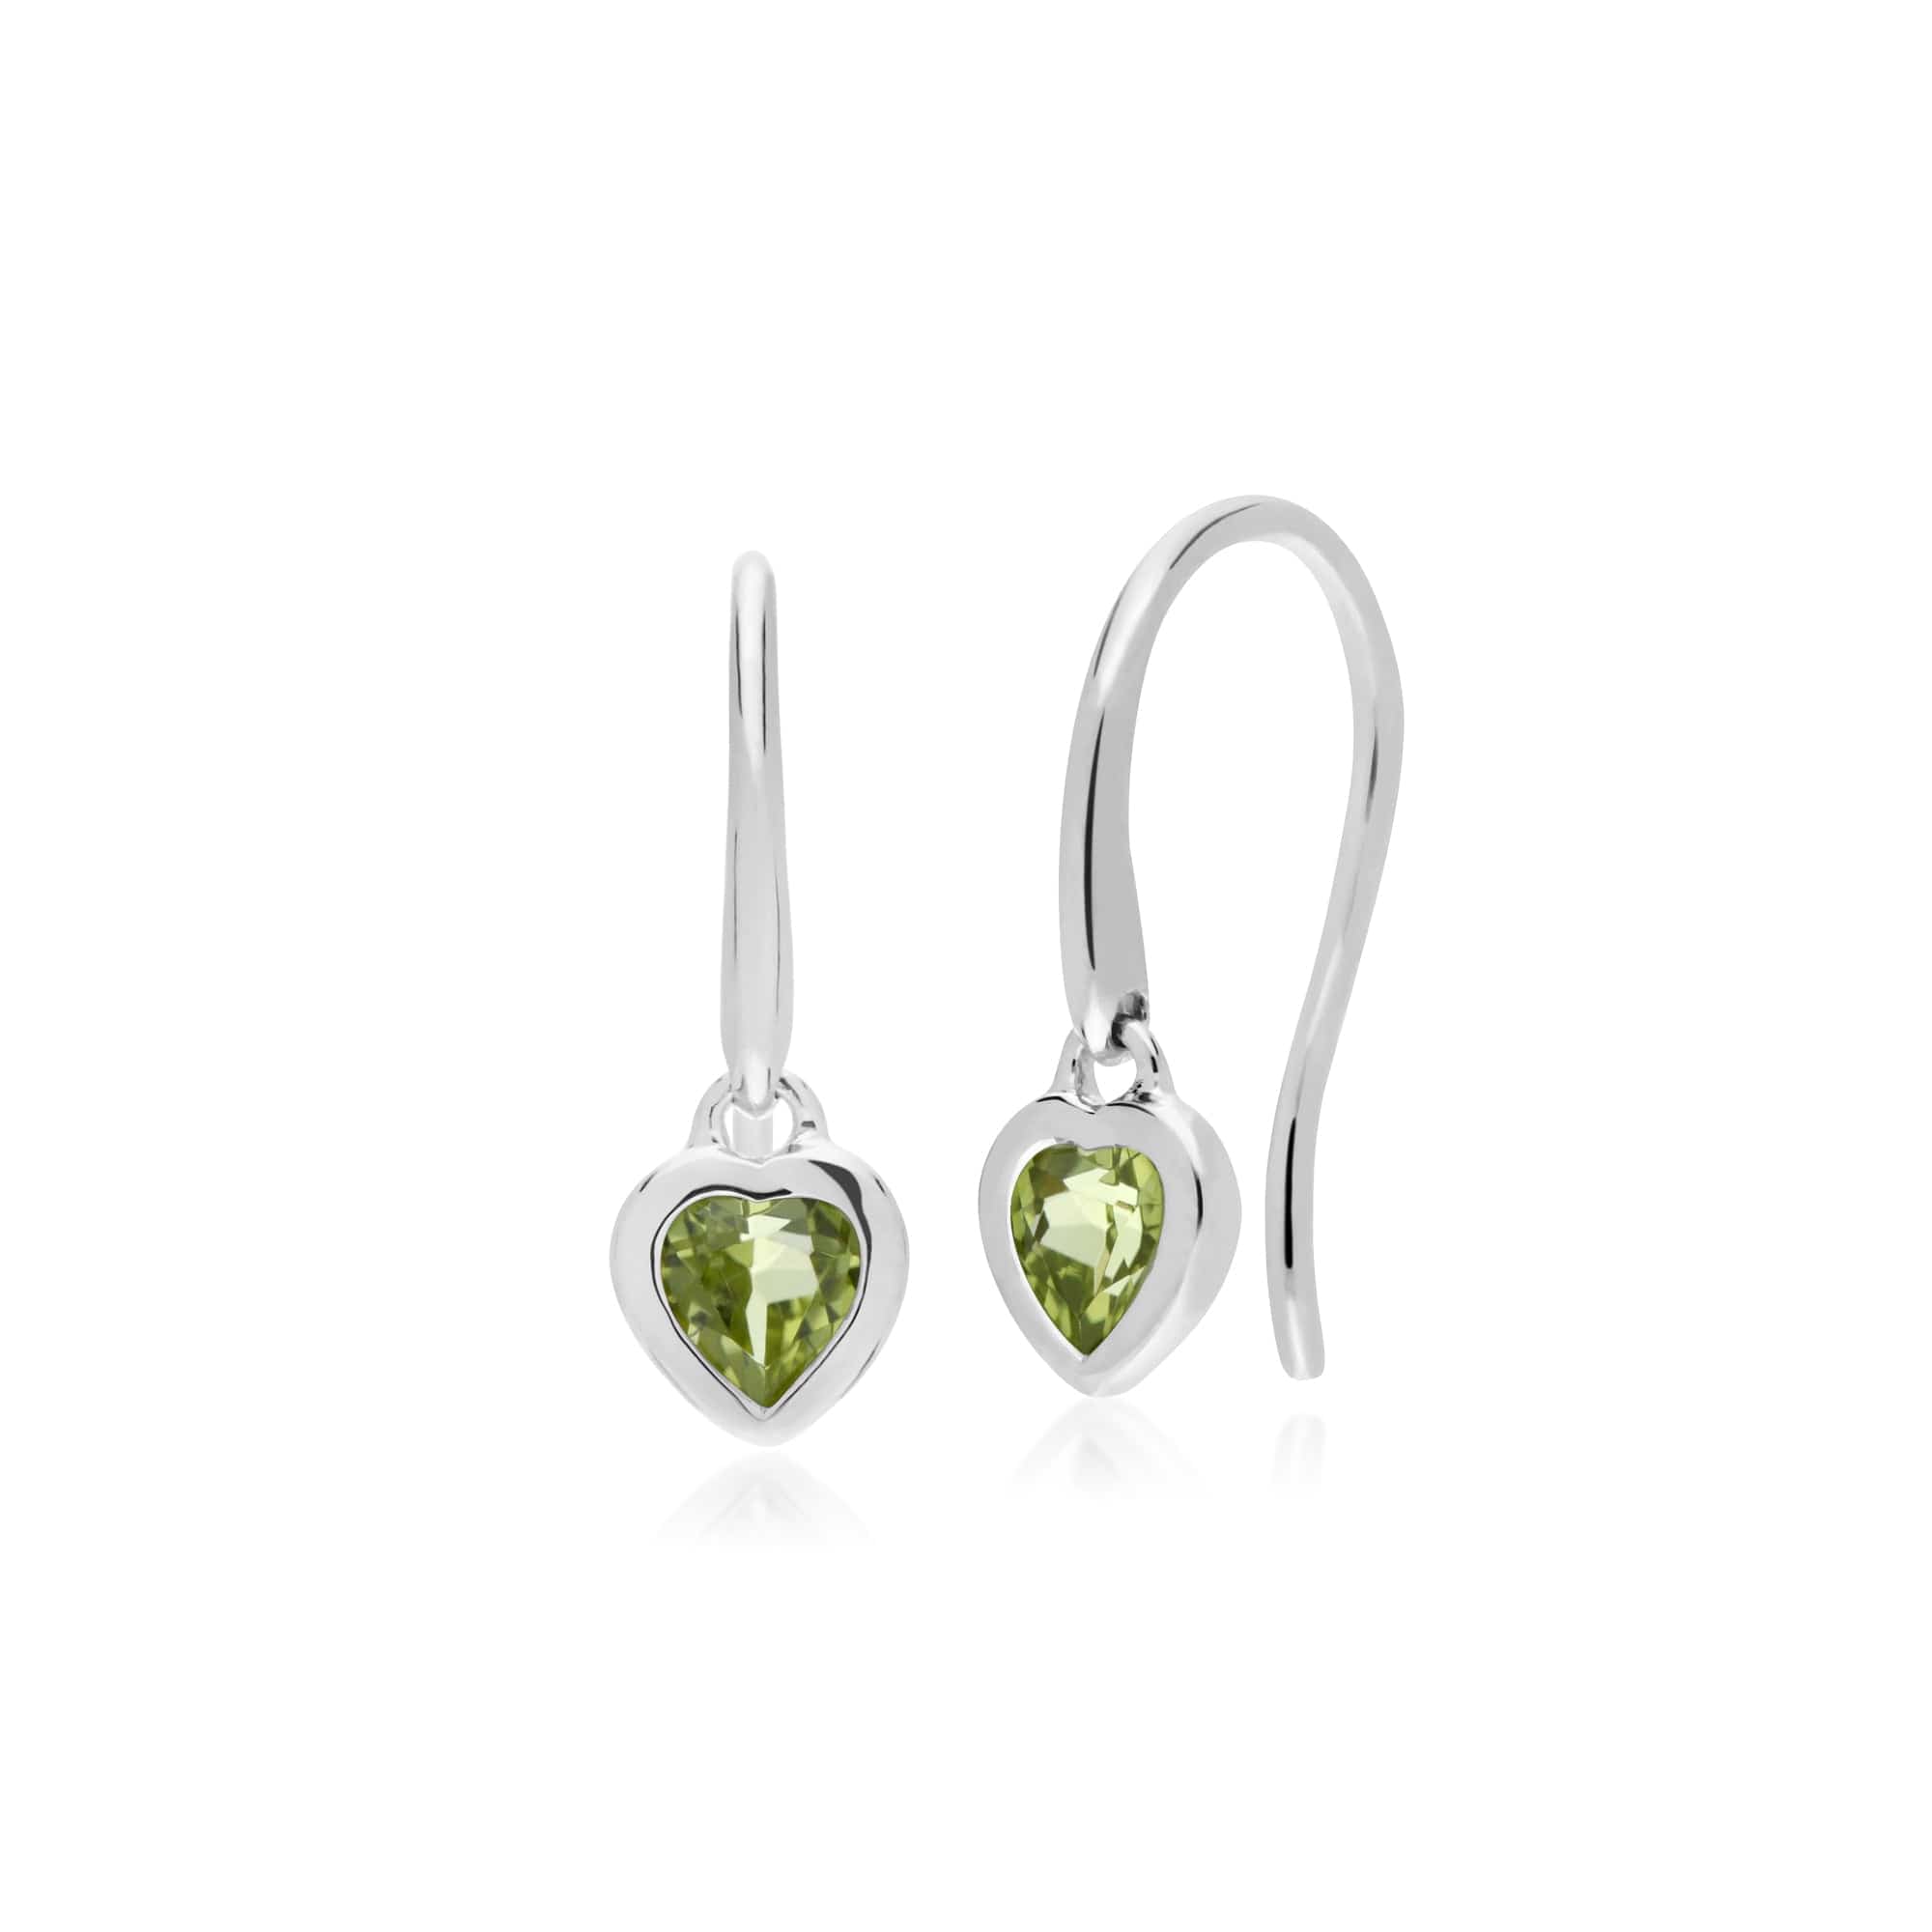 270E026204925-270P028704925 Classic Heart Peridot Drop Earrings & Pendant Set in 925 Sterling Silver 2